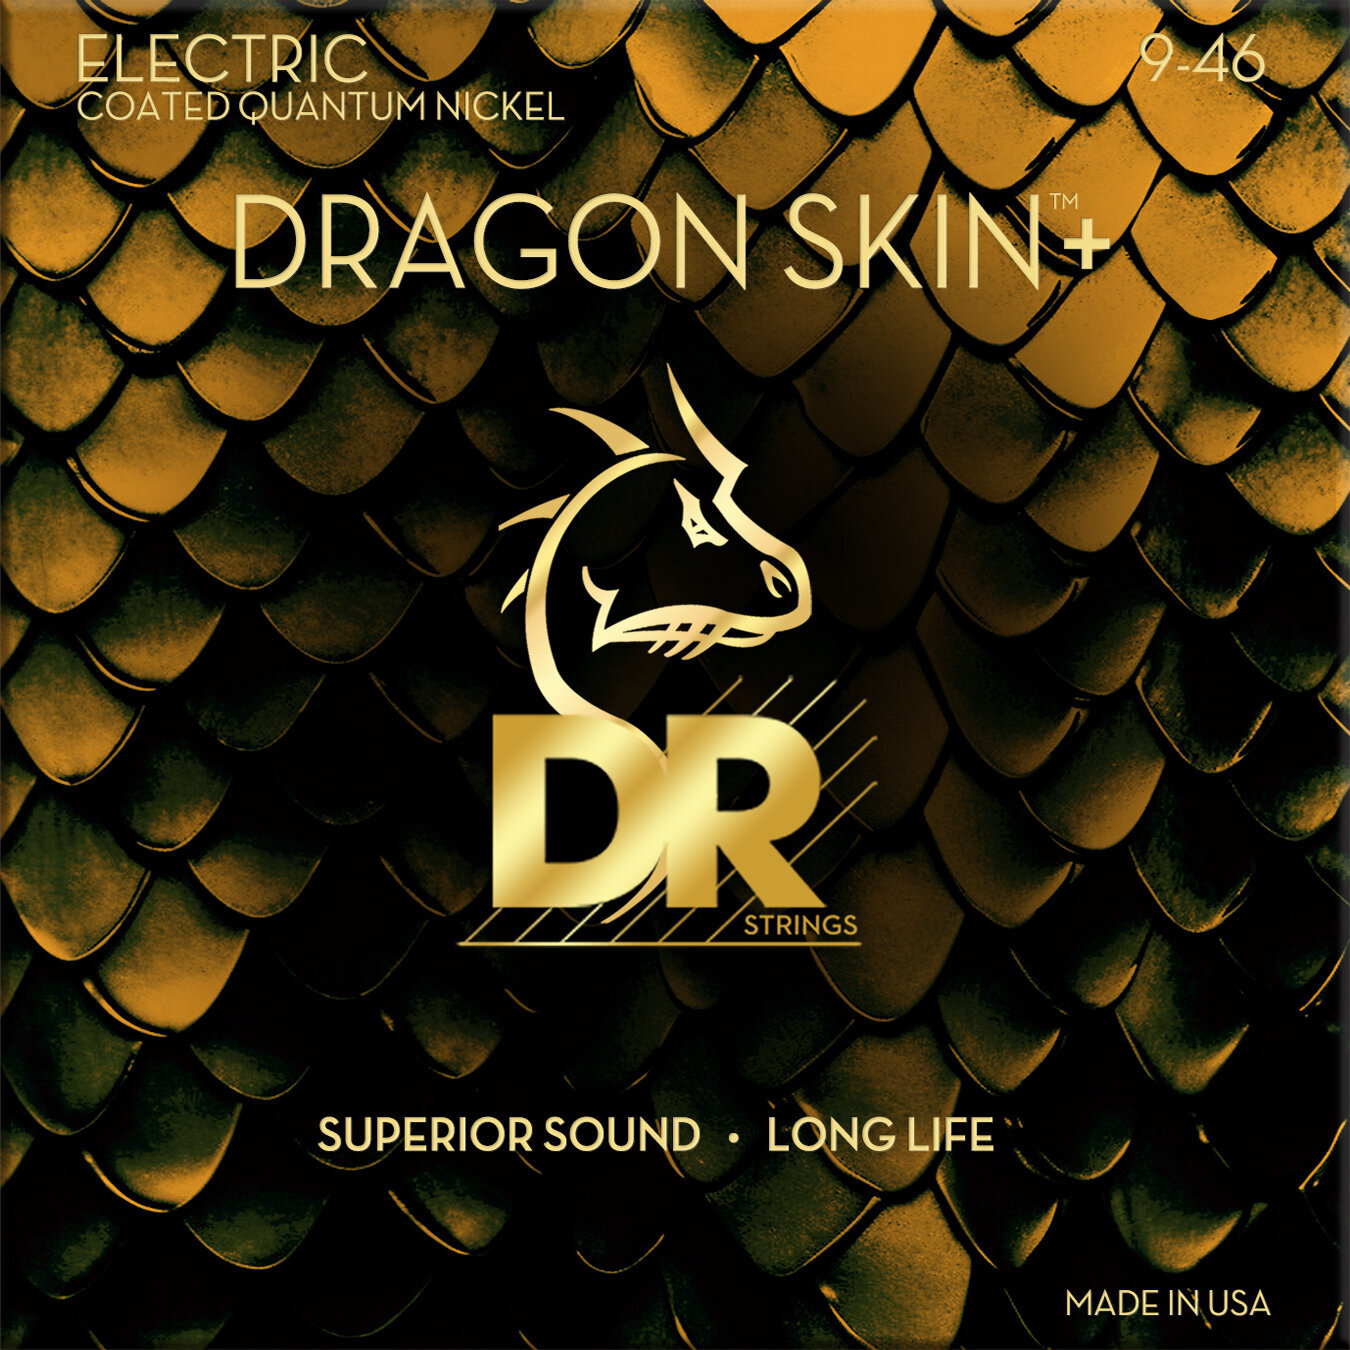 Struny pre elektrickú gitaru DR Strings Dragon Skin+ Coated Light to Medium 9-46